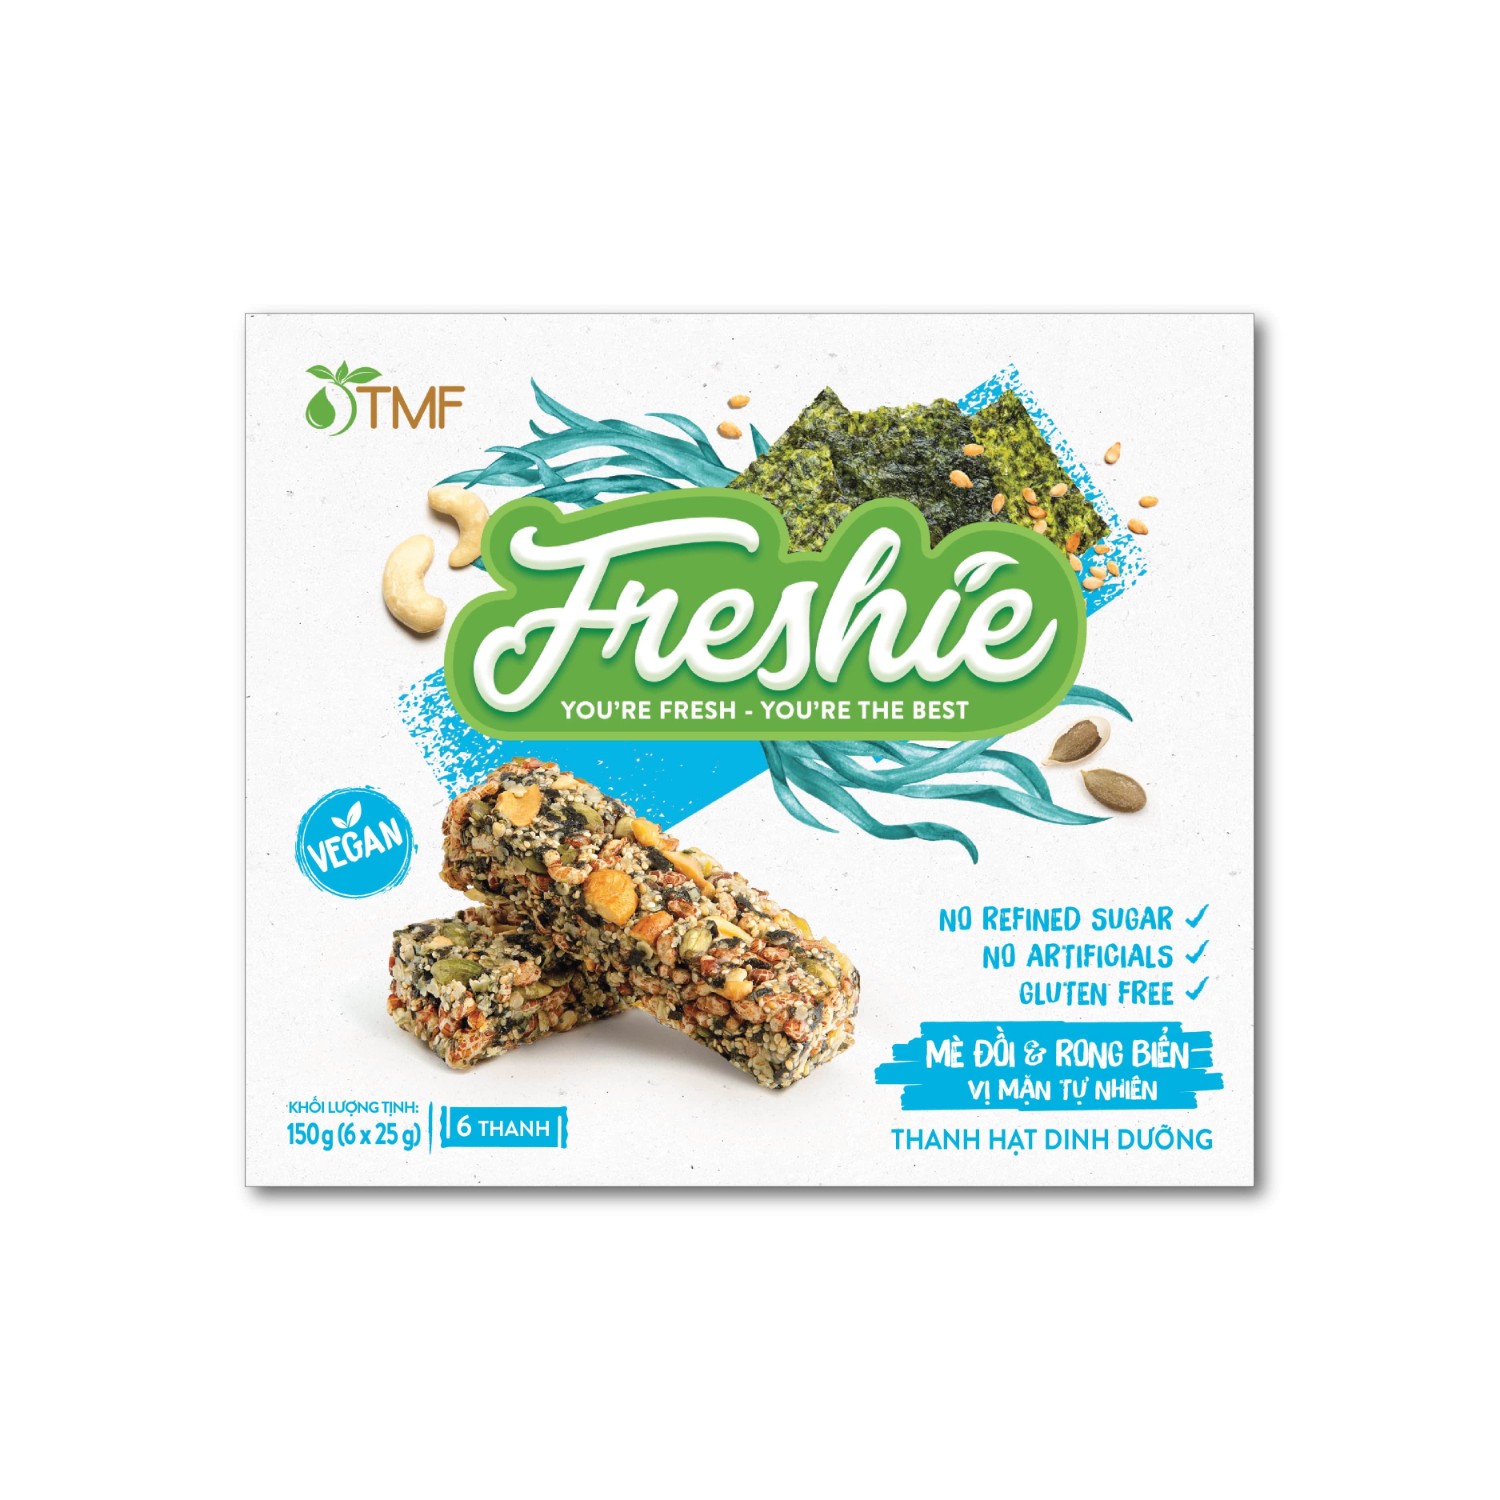 Thanh hạt dinh dưỡng Freshie - Mè đồi & Rong biển